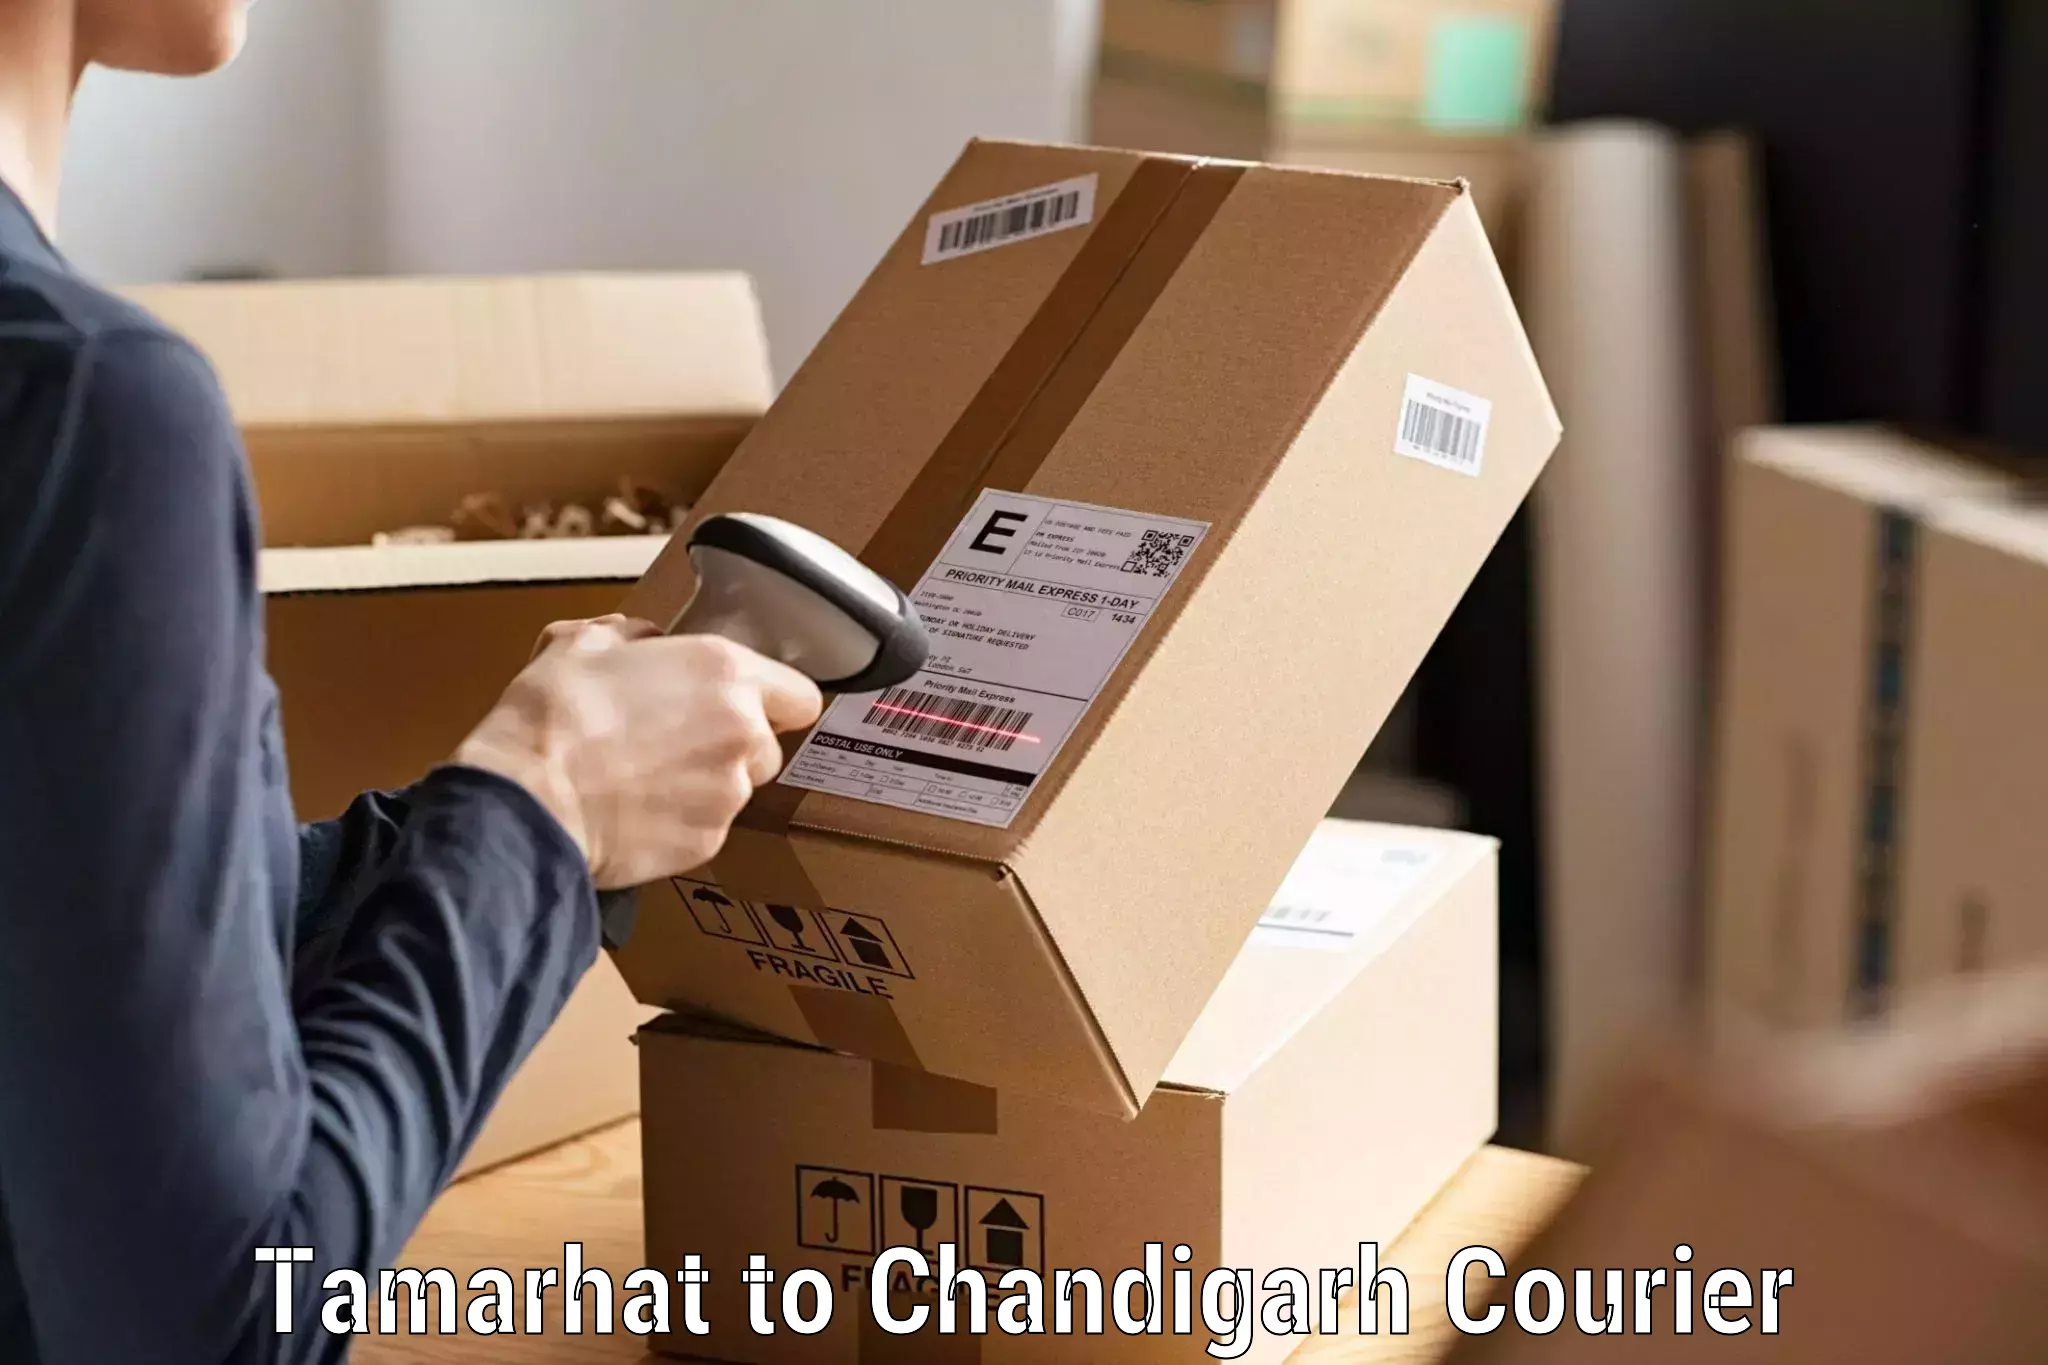 Efficient parcel service Tamarhat to Chandigarh